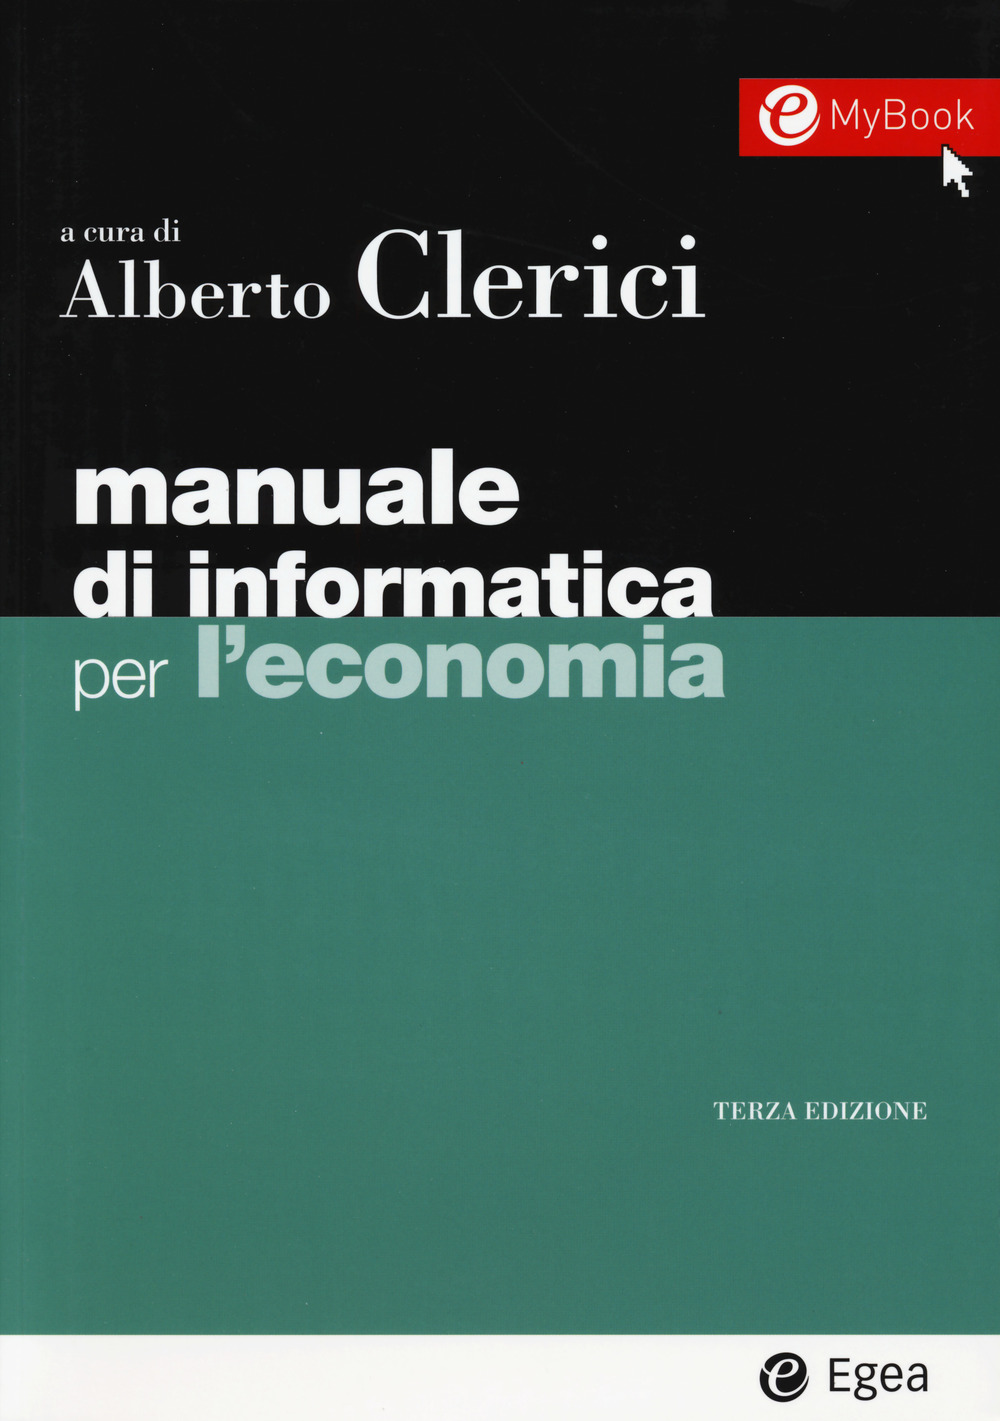 Image of Manuale di informatica per l'economia